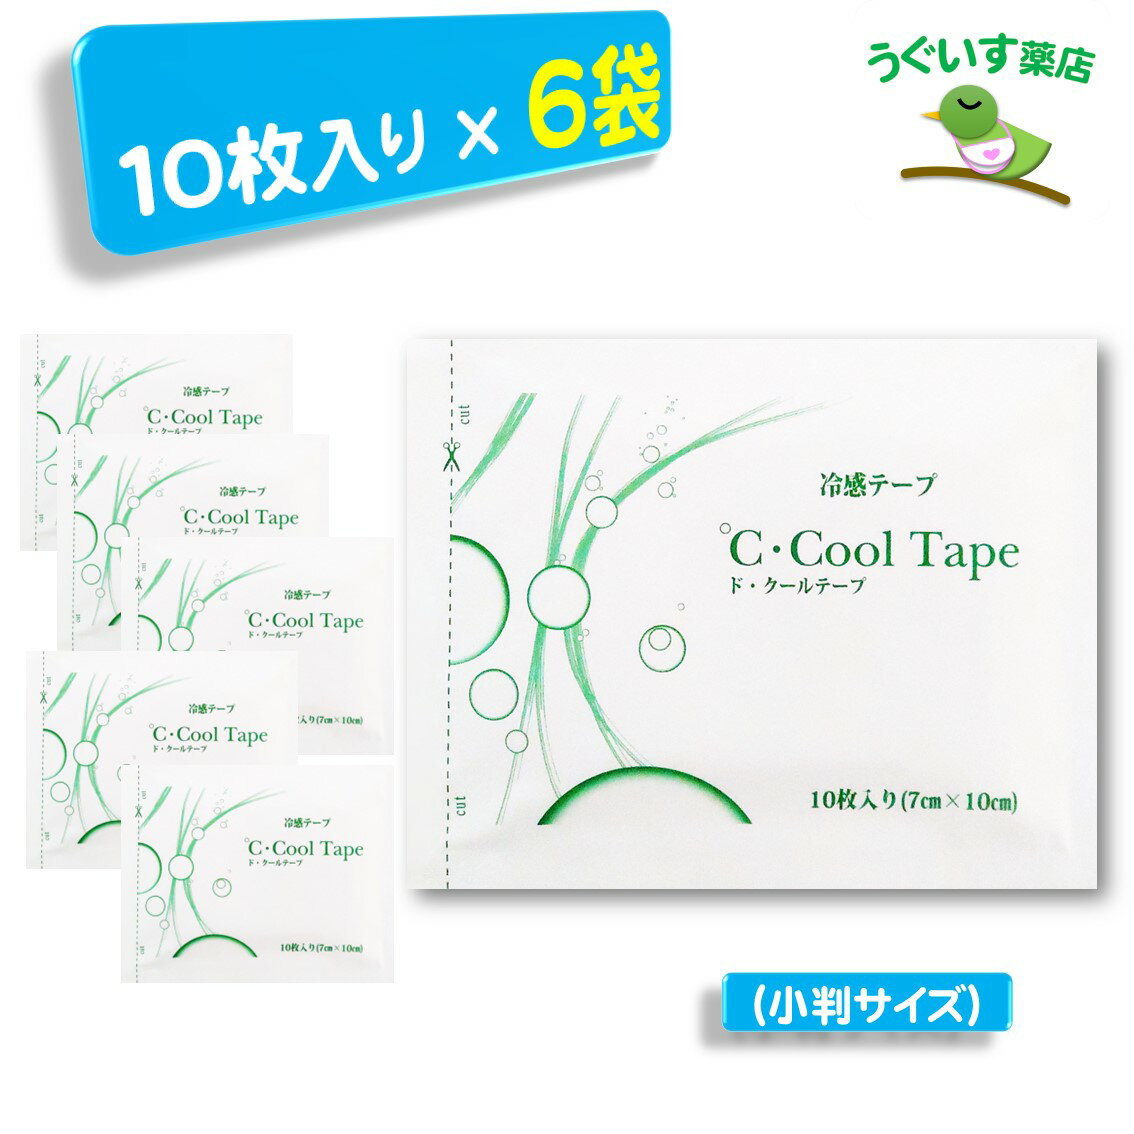  かぶれにくい湿布 ド・クールテープ ℃・Cool Tape 10枚入り 6袋 冷感テープ 日本製 やさしい 湿布 シップ ドクール 貼り薬